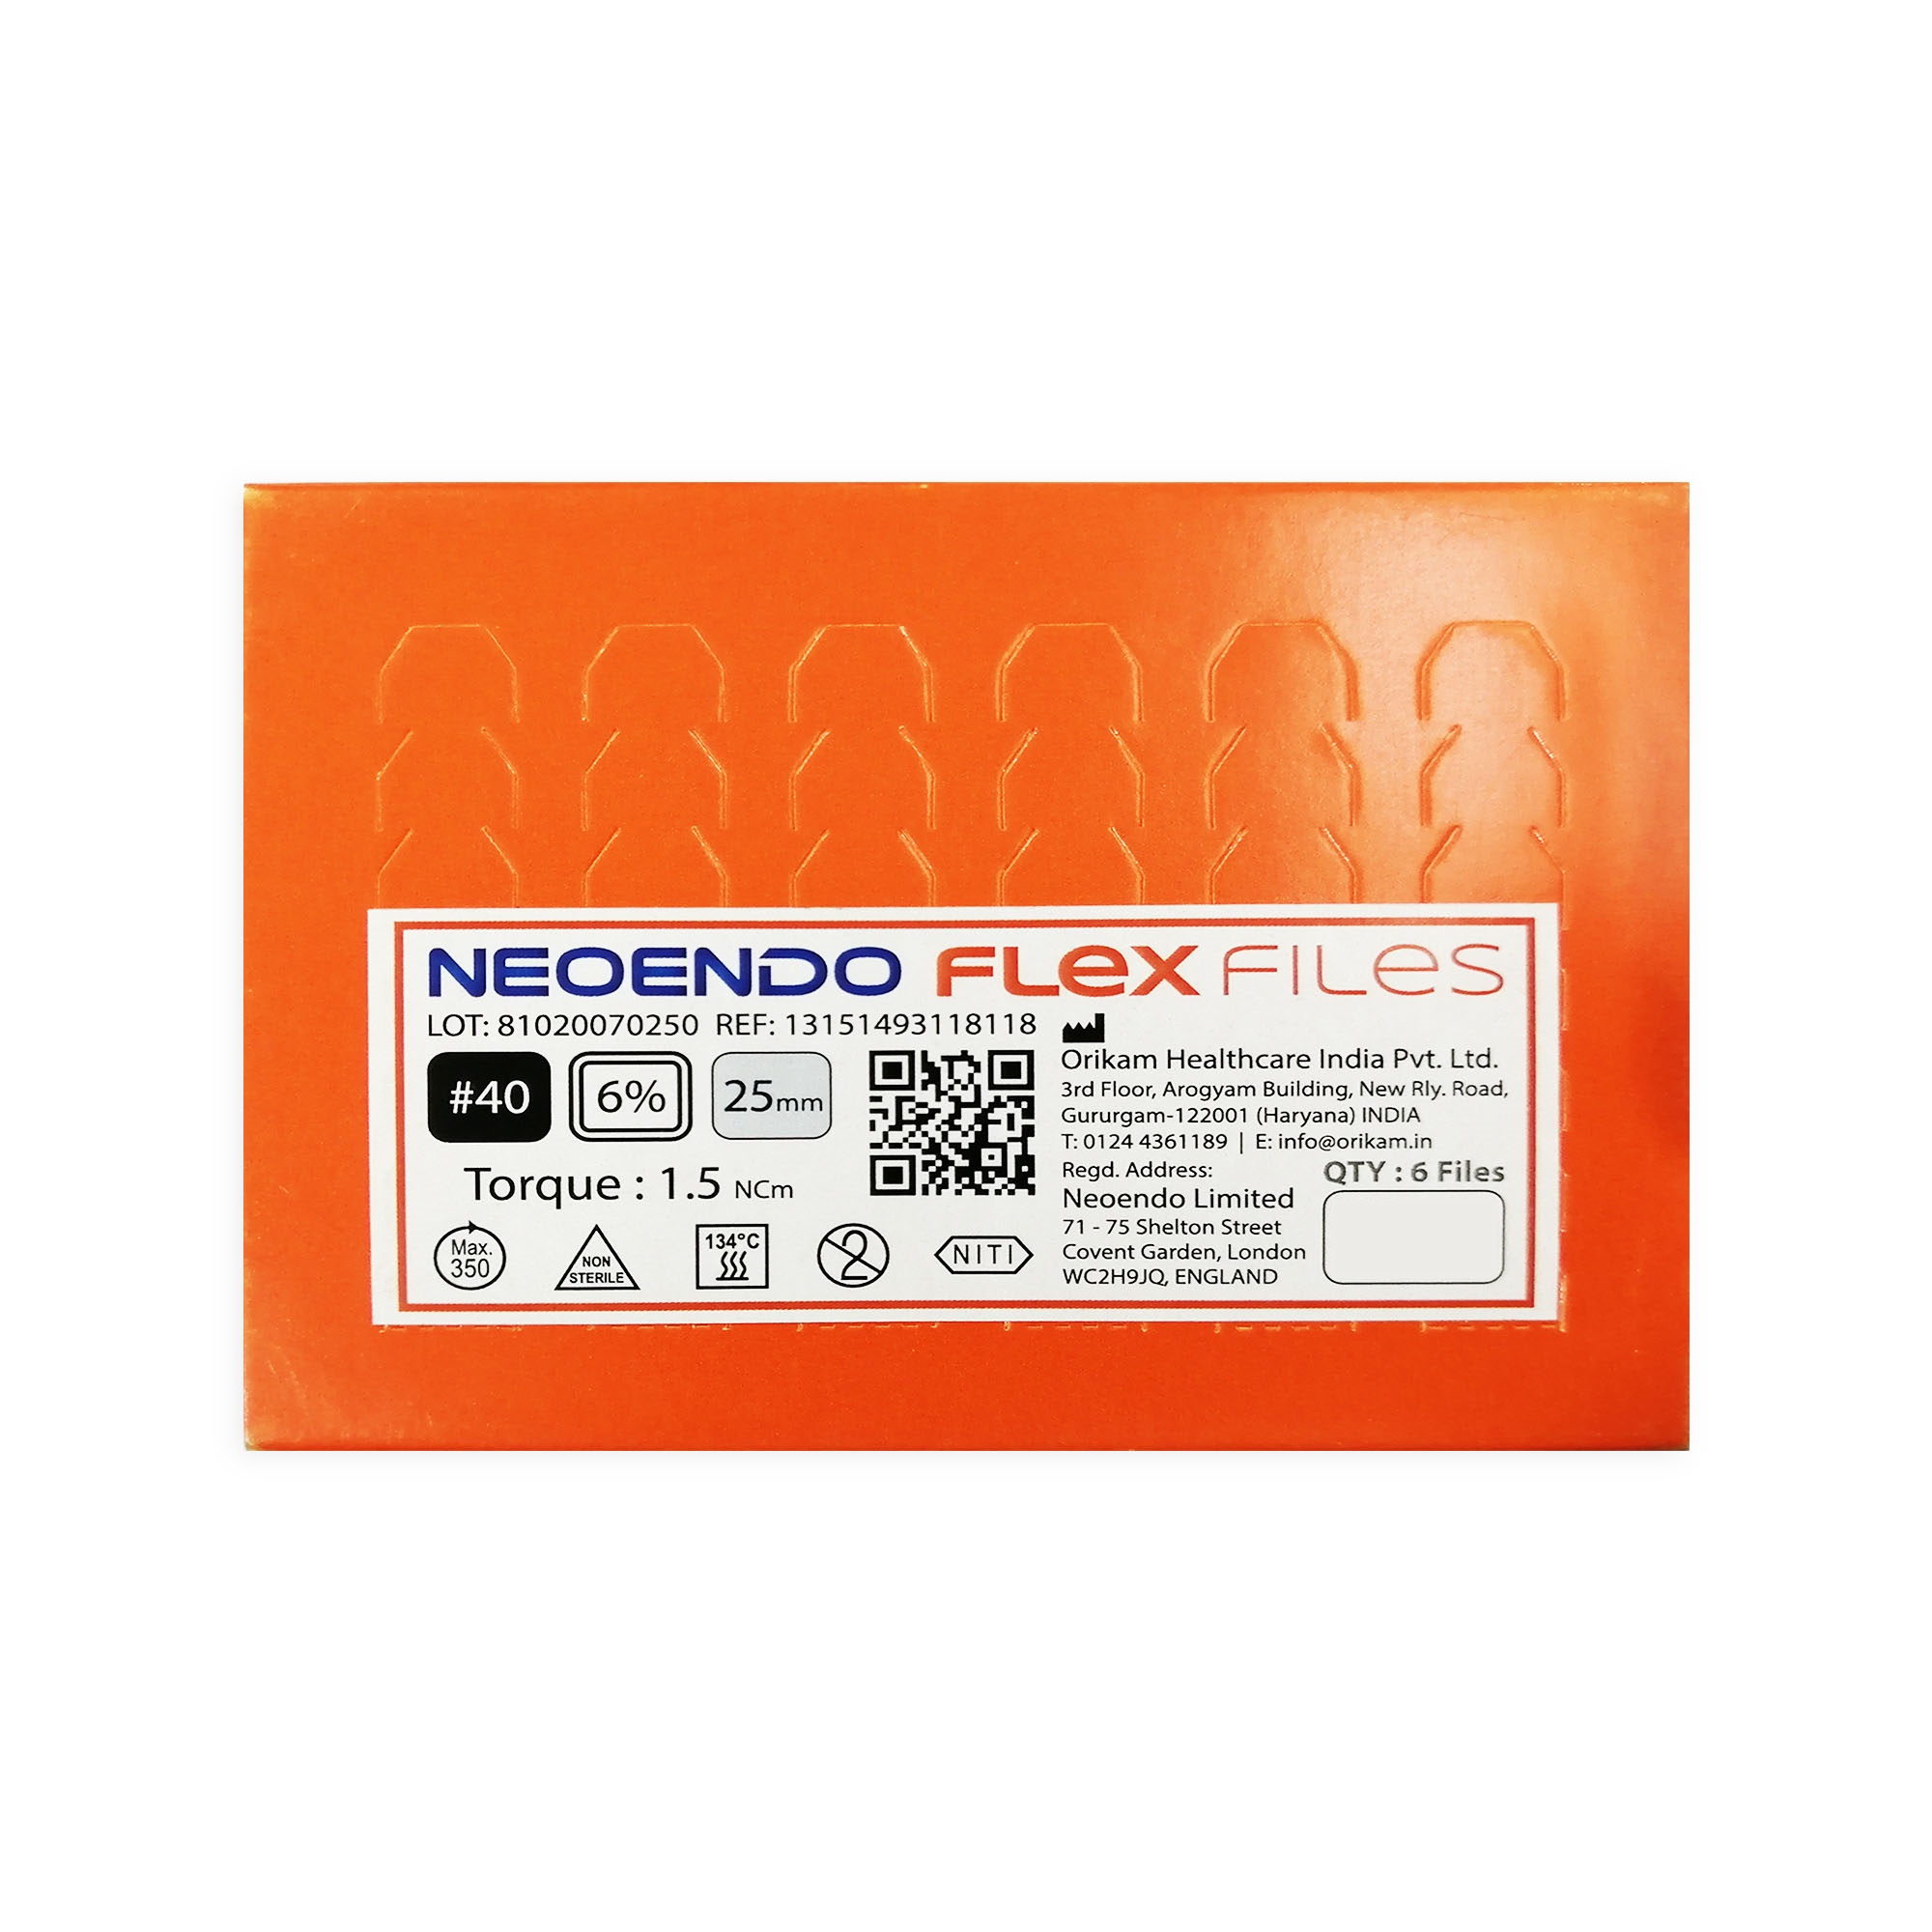 NeoEndo Flex Files 25mm 35/6 Endo Rotary Files